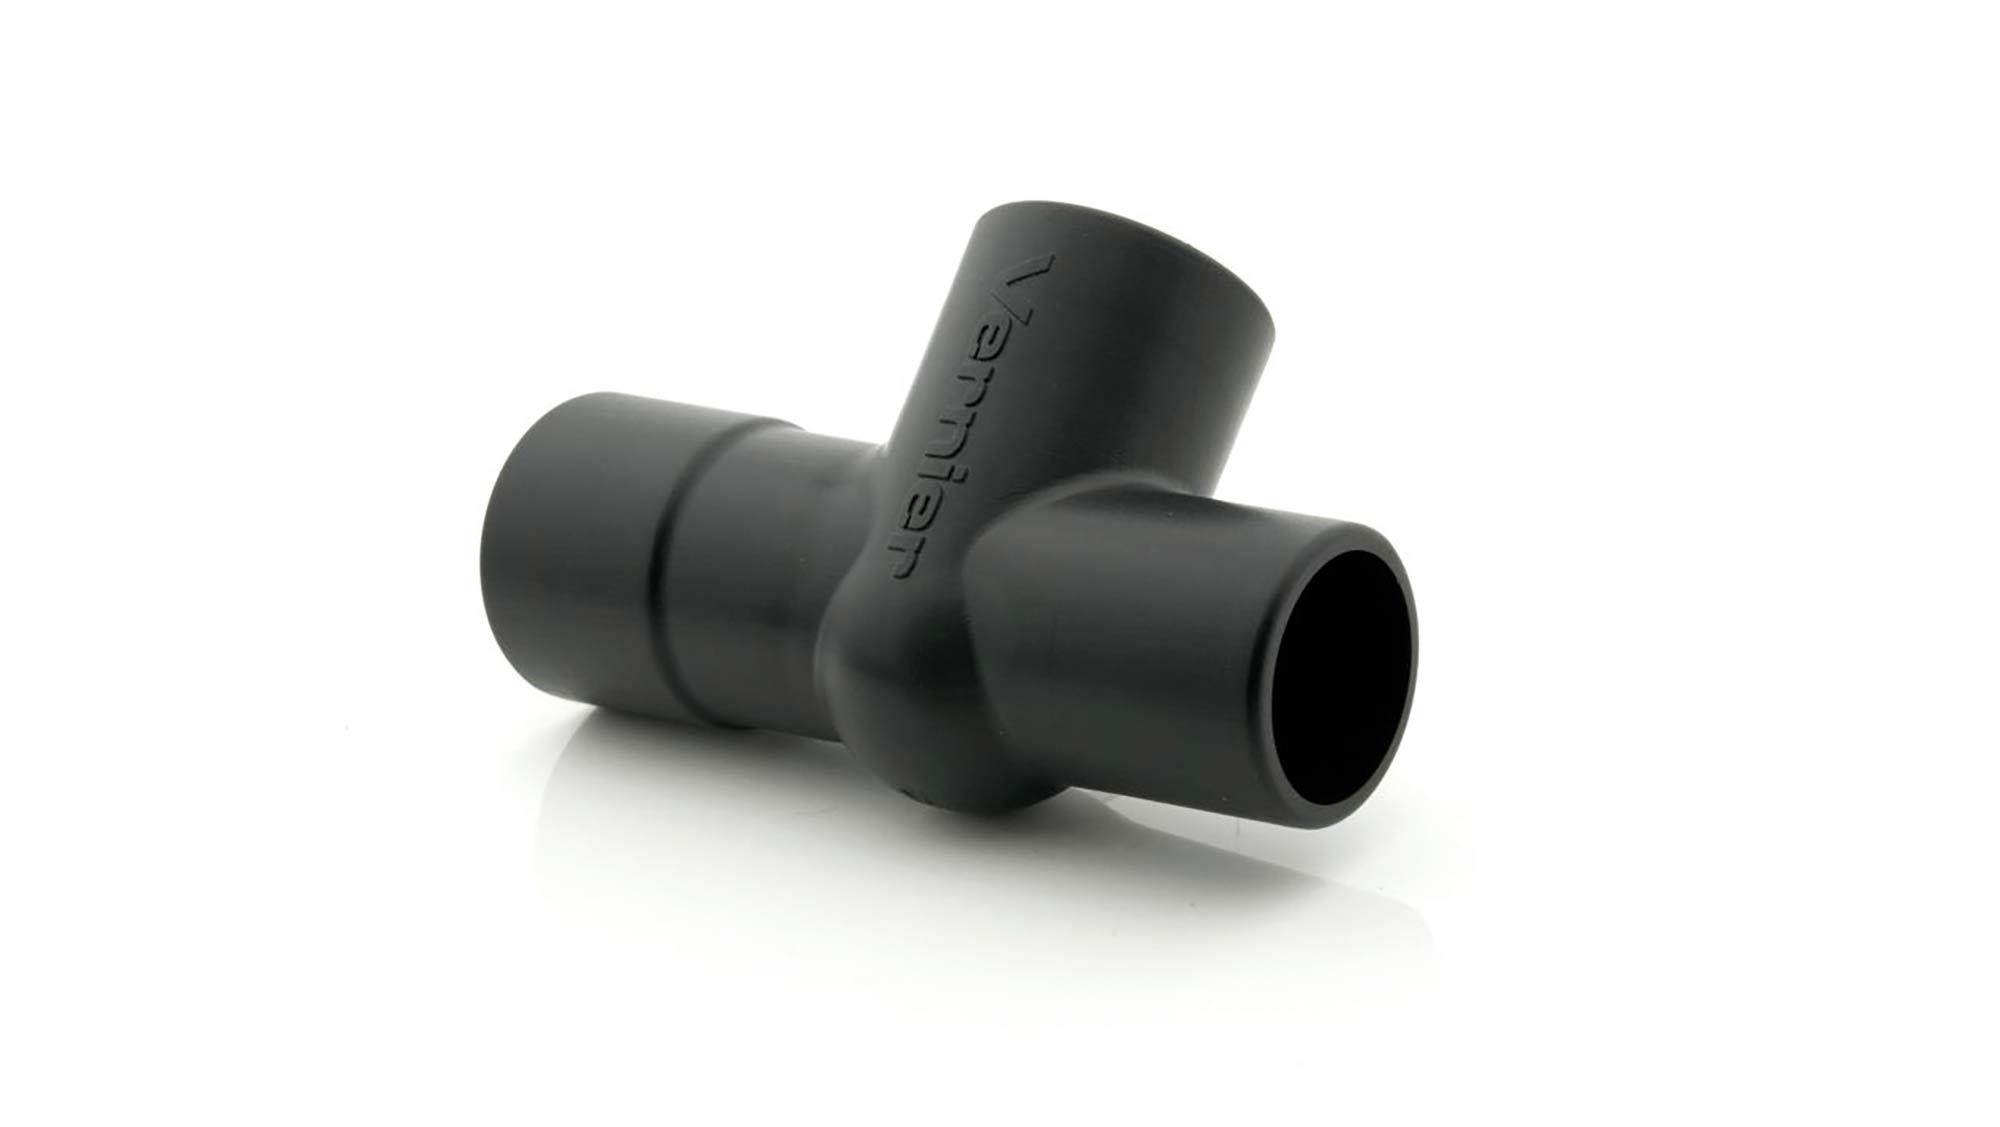 VERNIER Spirometeradapter für den O2 Sensor Verbindung zwischen dem Sauerstoffsensor und dem Spirome